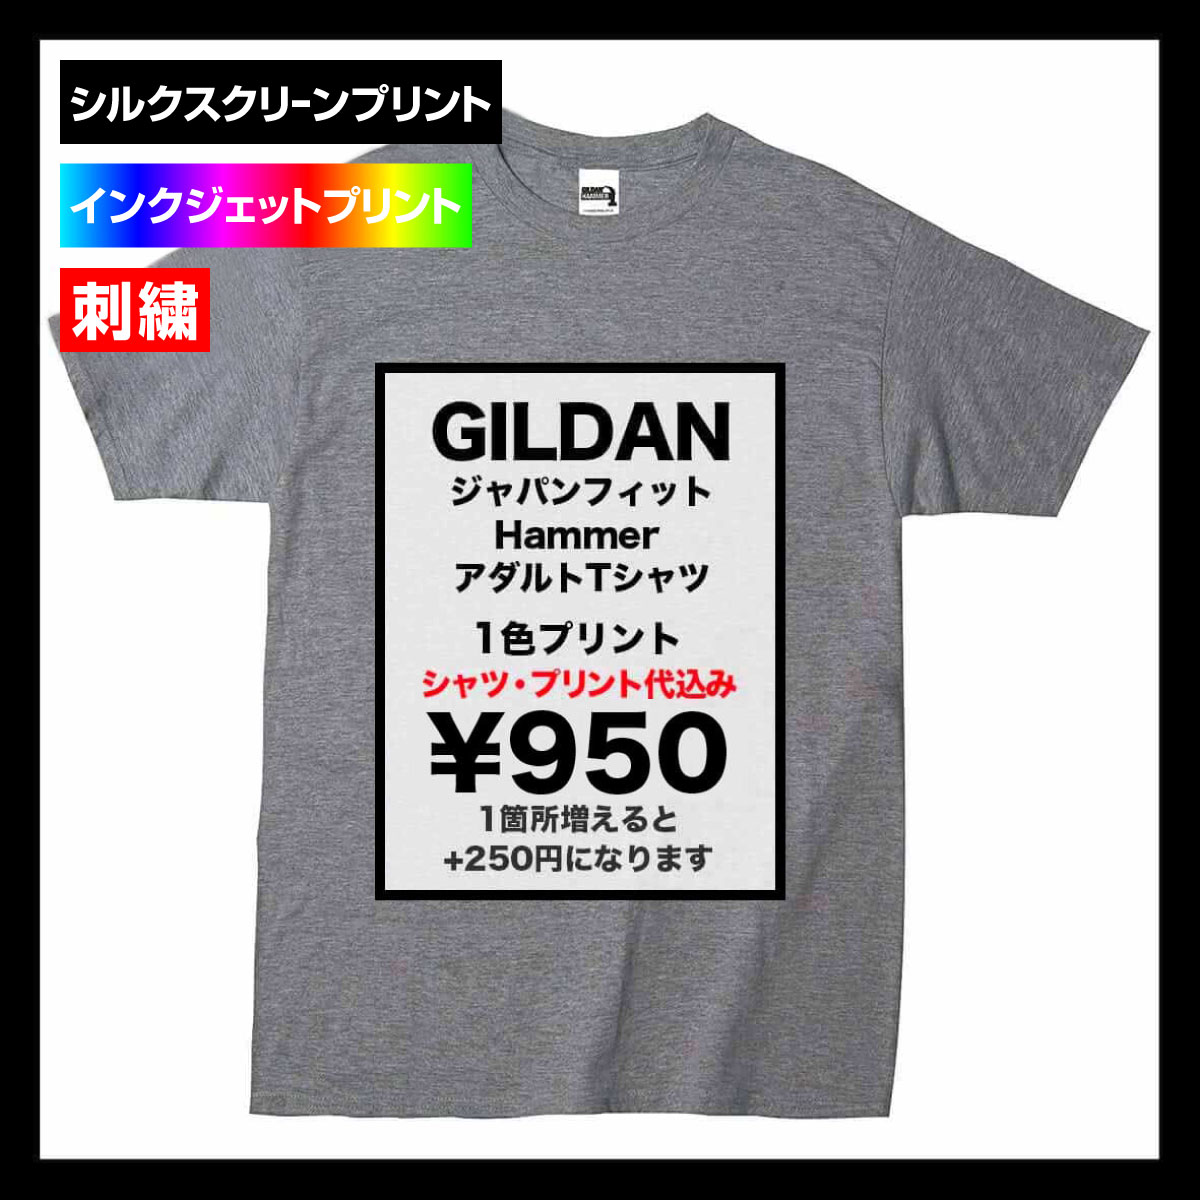 GILDAN ギルダン 6.1 oz ジャパンフィット Hammer アダルト Tシャツ (品番HA00)